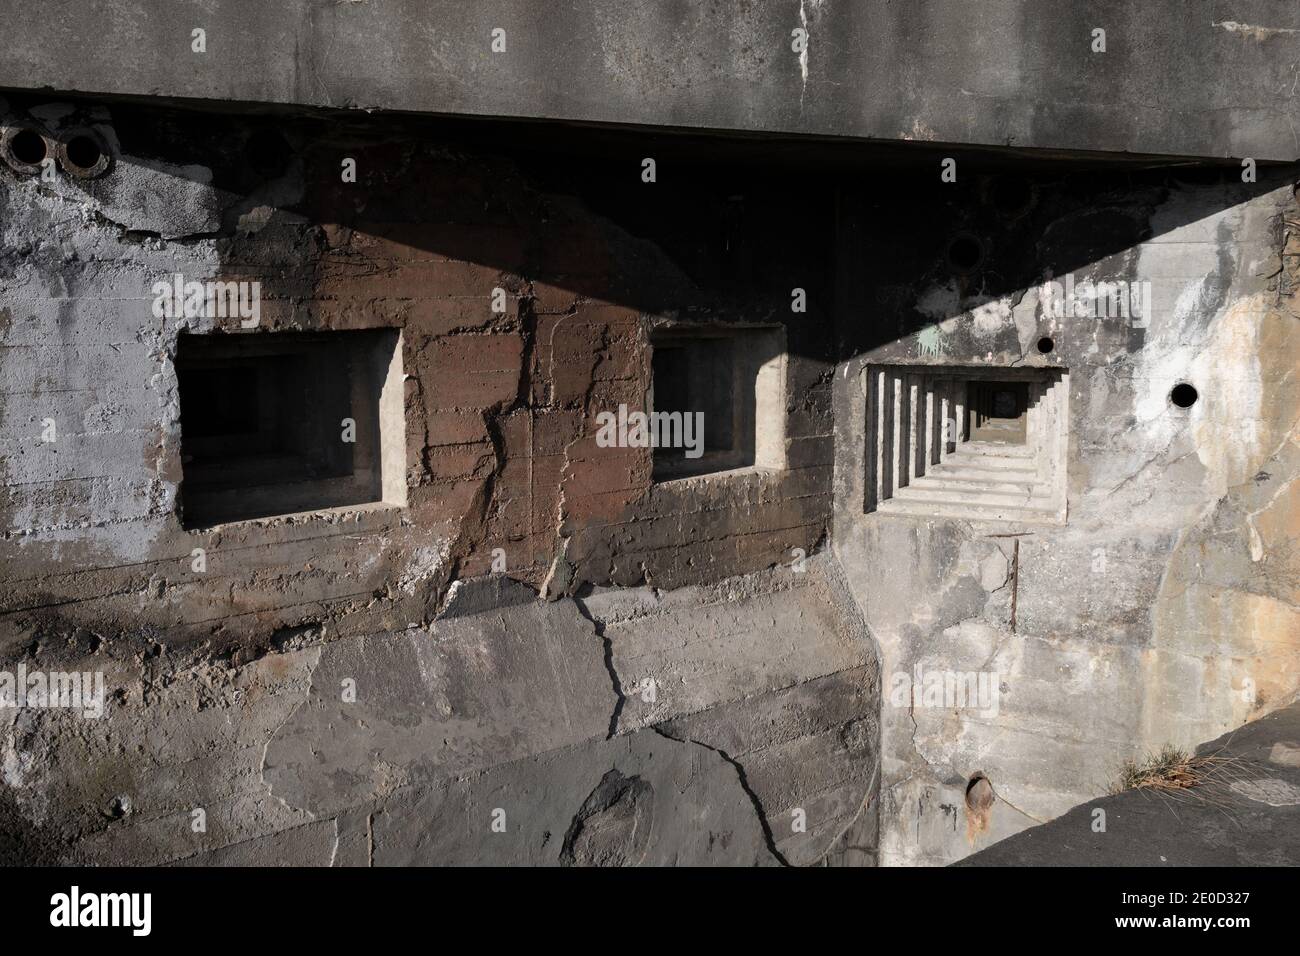 Dettaglio di bunker militare e pillbox dalla seconda guerra mondiale - abbraccio steppen e foro per pistola nella parete grigia in cemento. Foto Stock